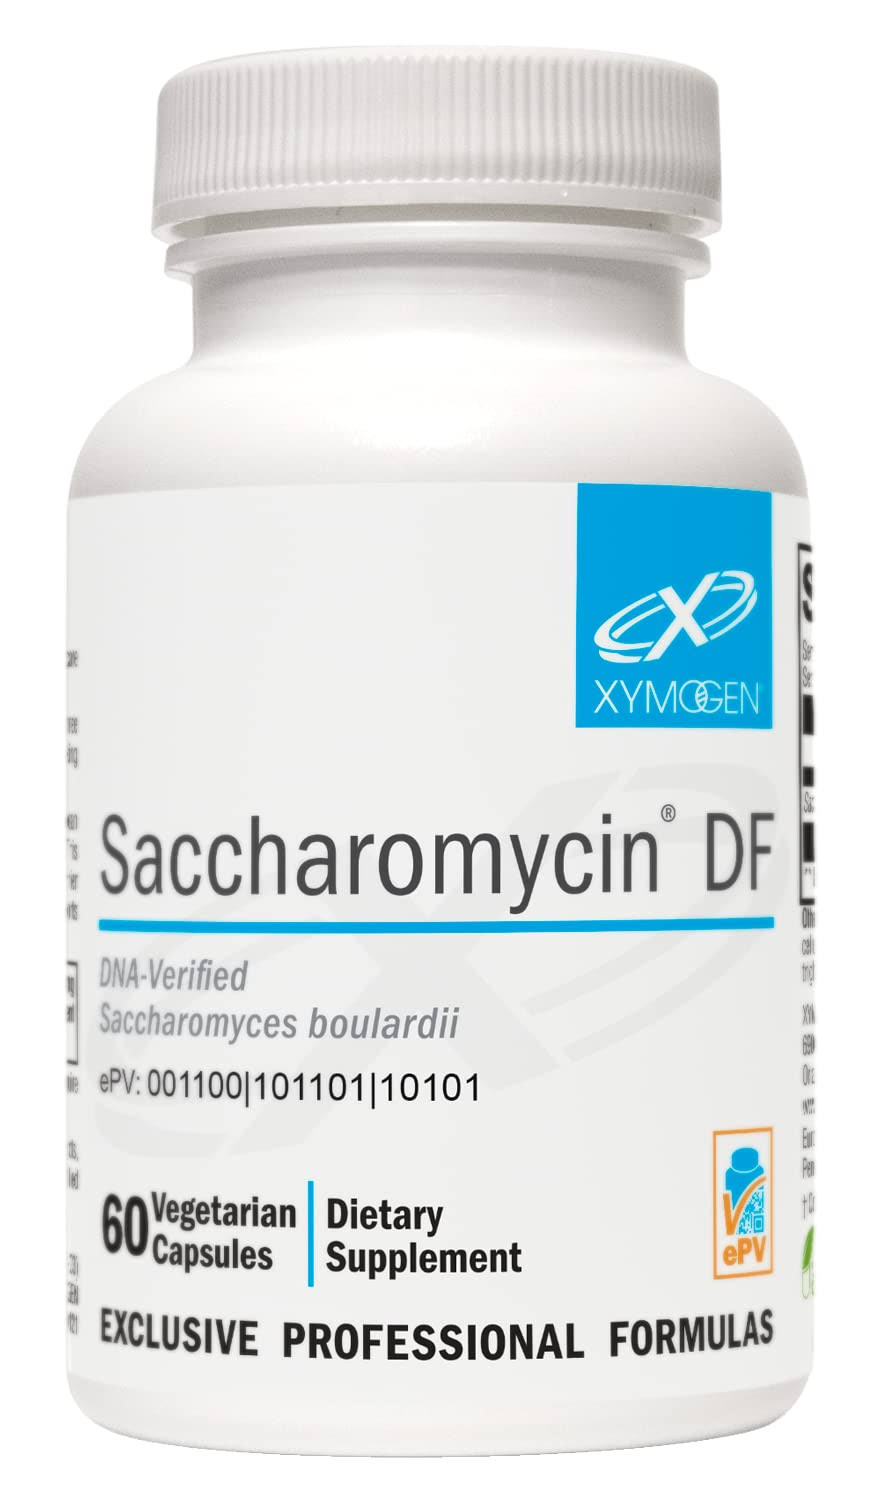 Xymogen Saccharomycin DF Vegetable Capsules - 60ct